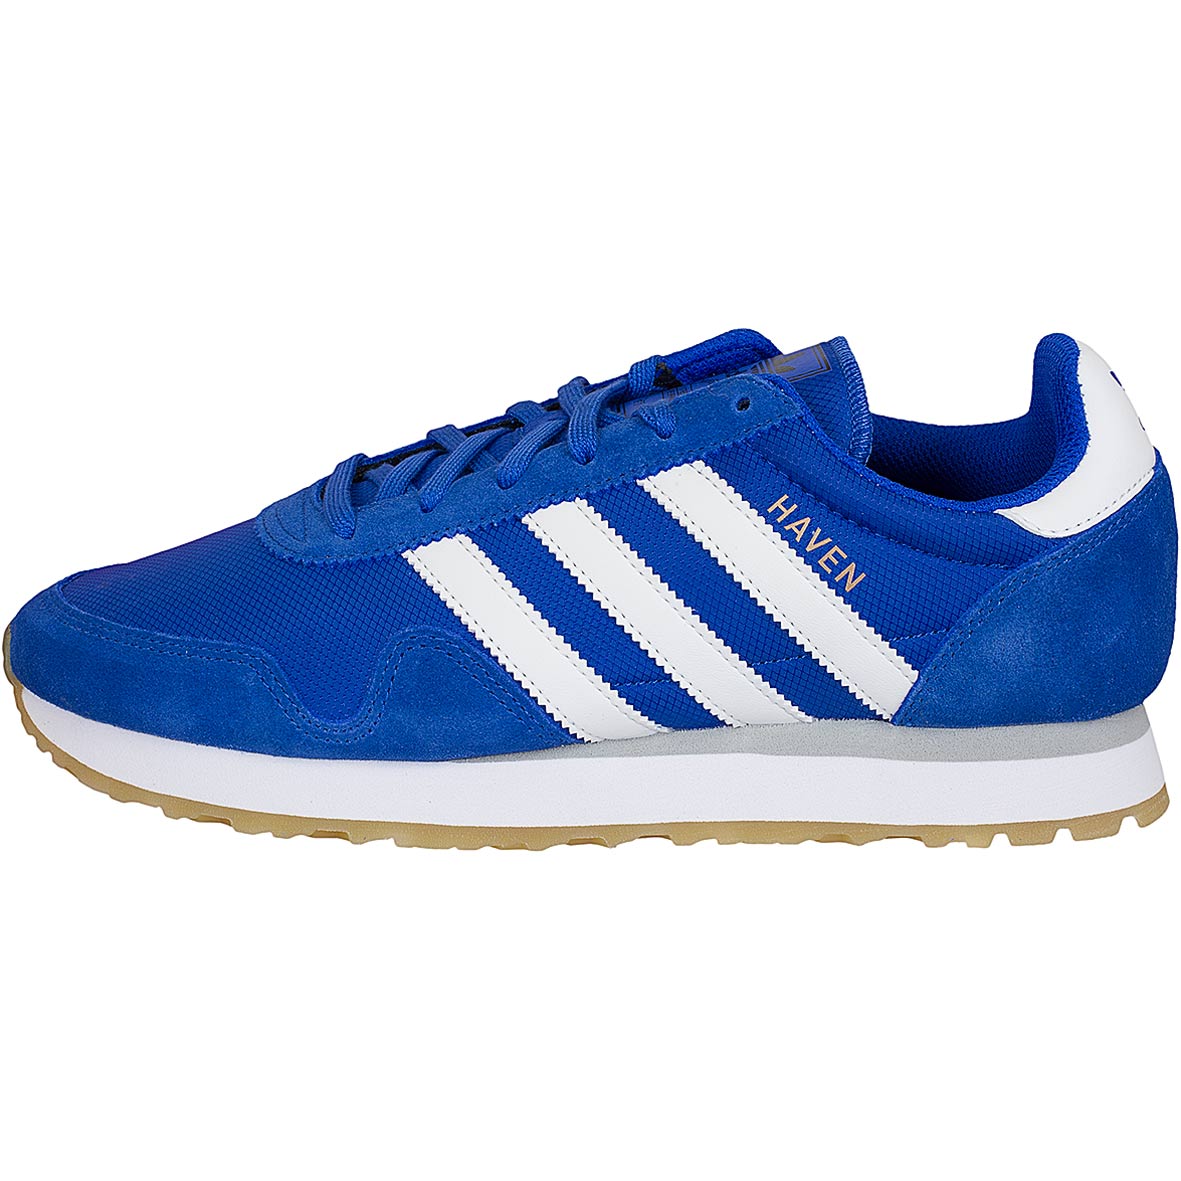 ☆ Adidas Originals Sneaker Haven blau/weiß - hier bestellen!